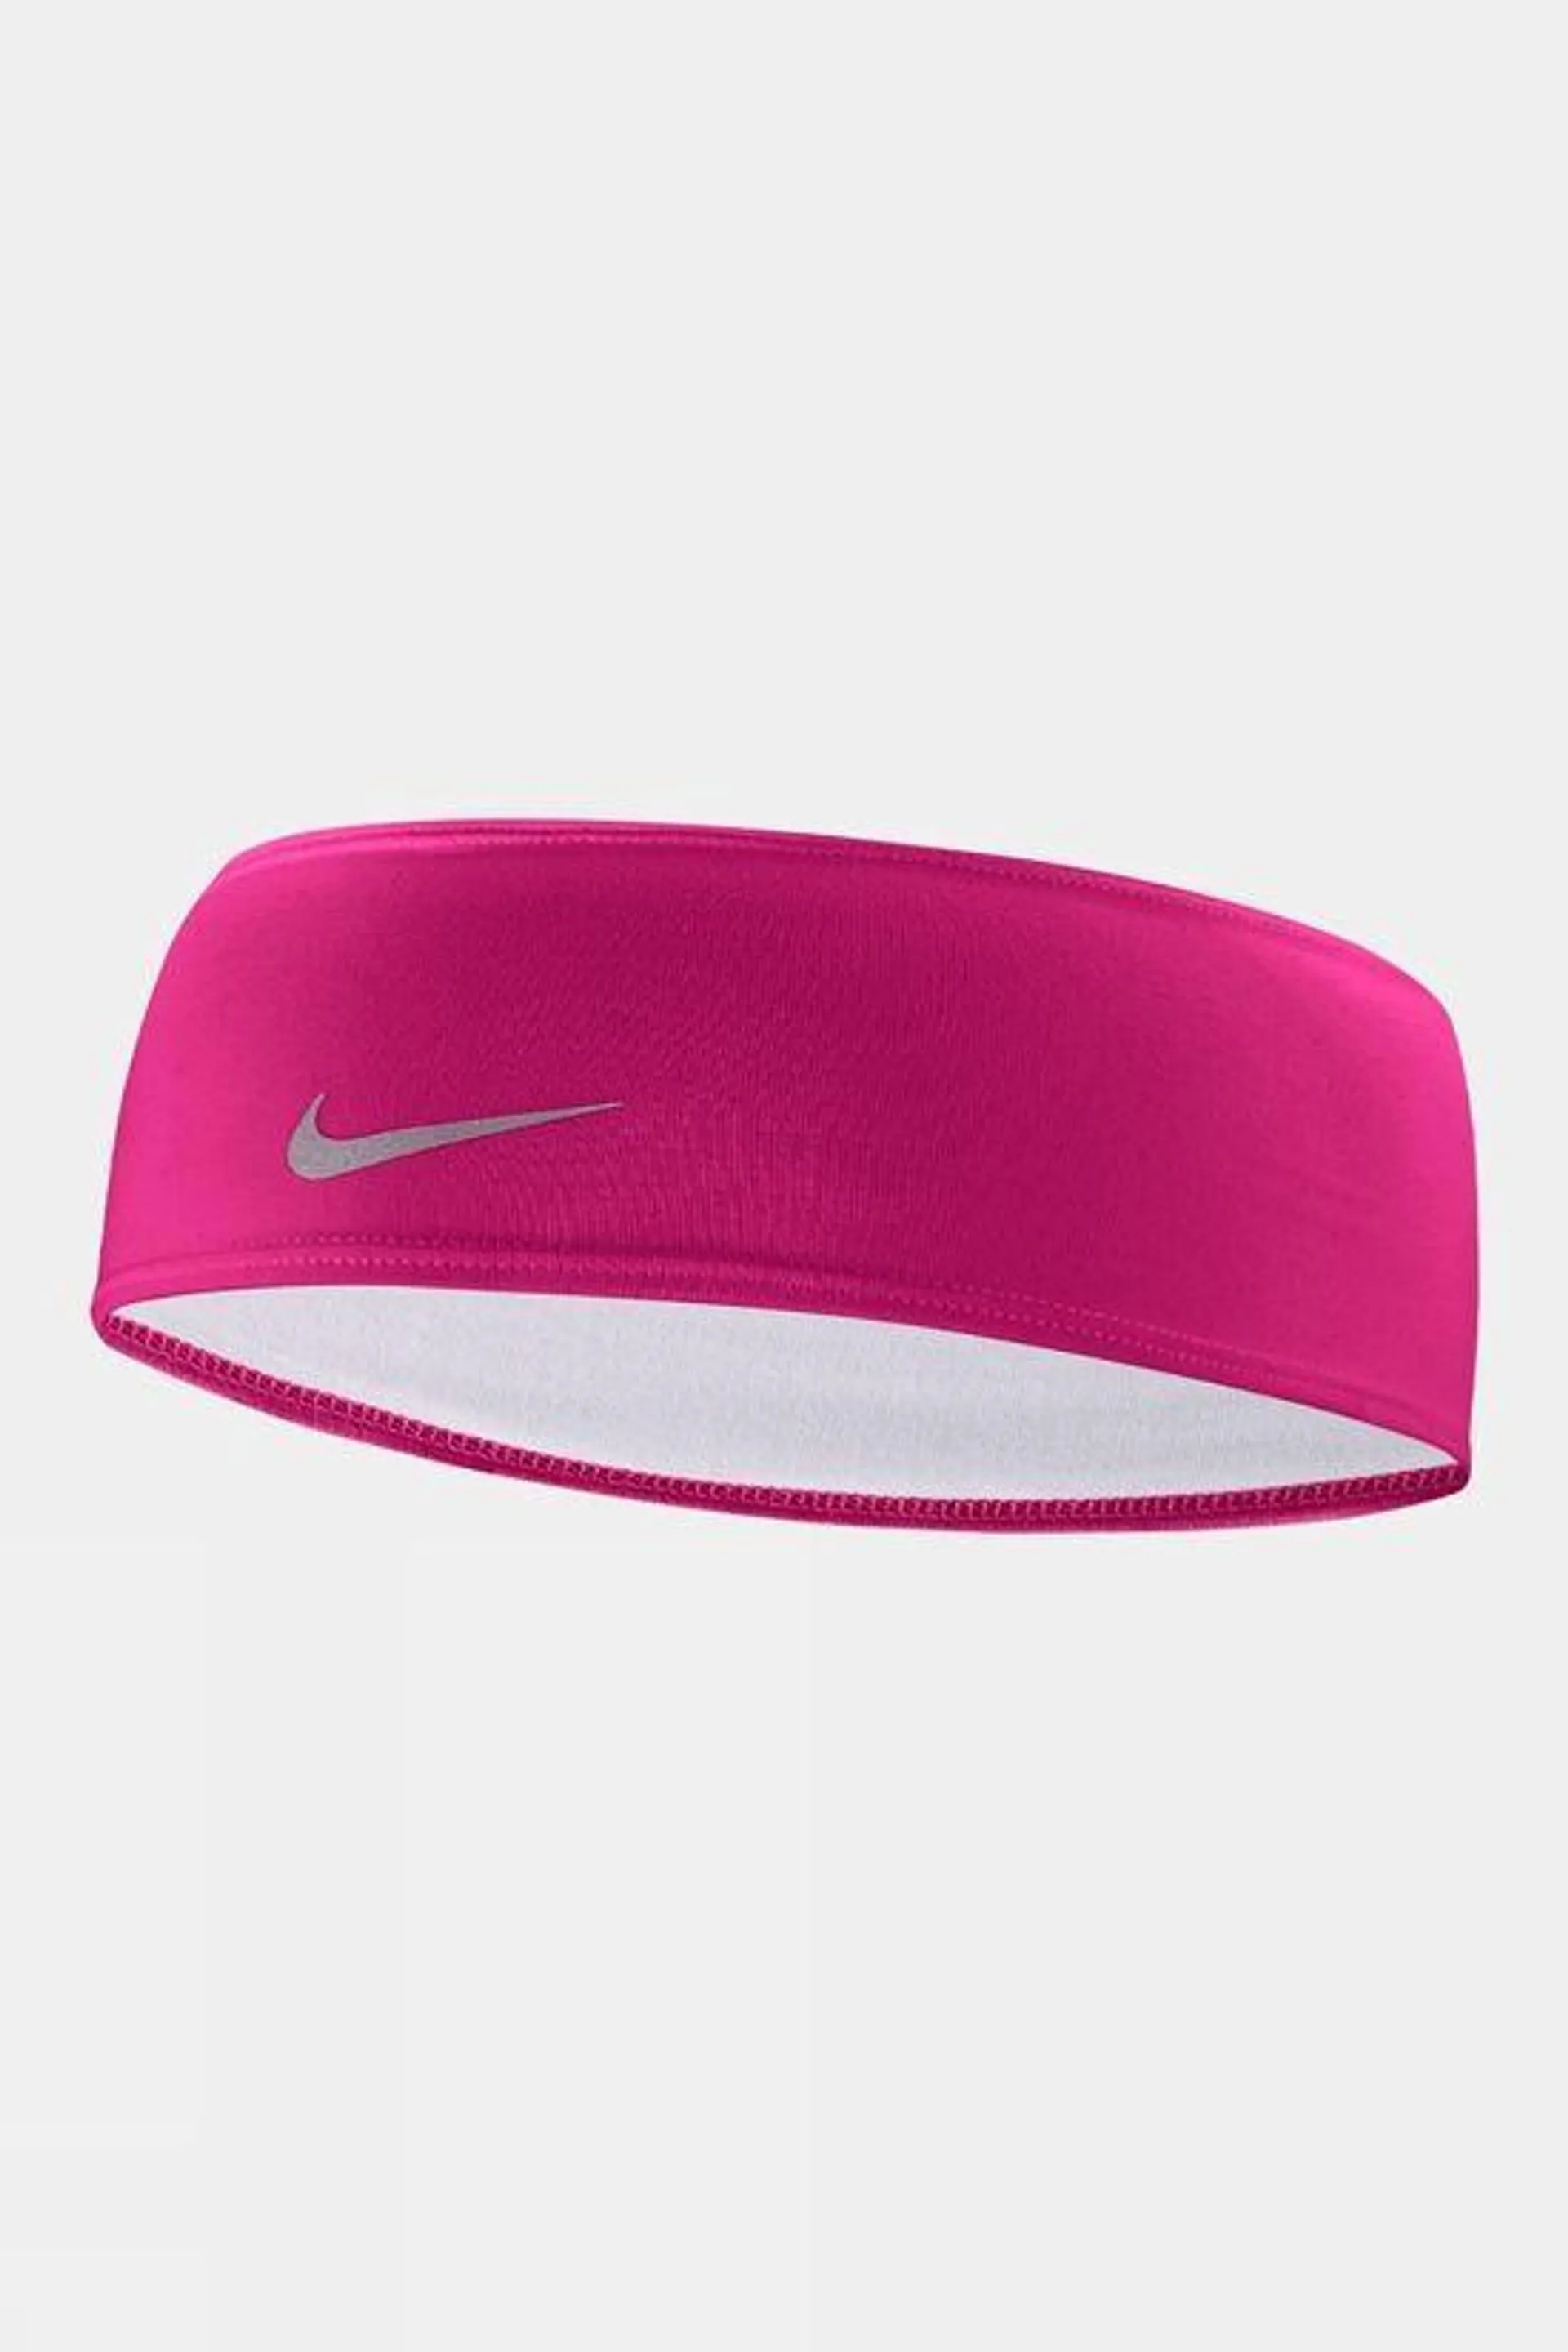 Nike Dri-FIT Swoosh Headband